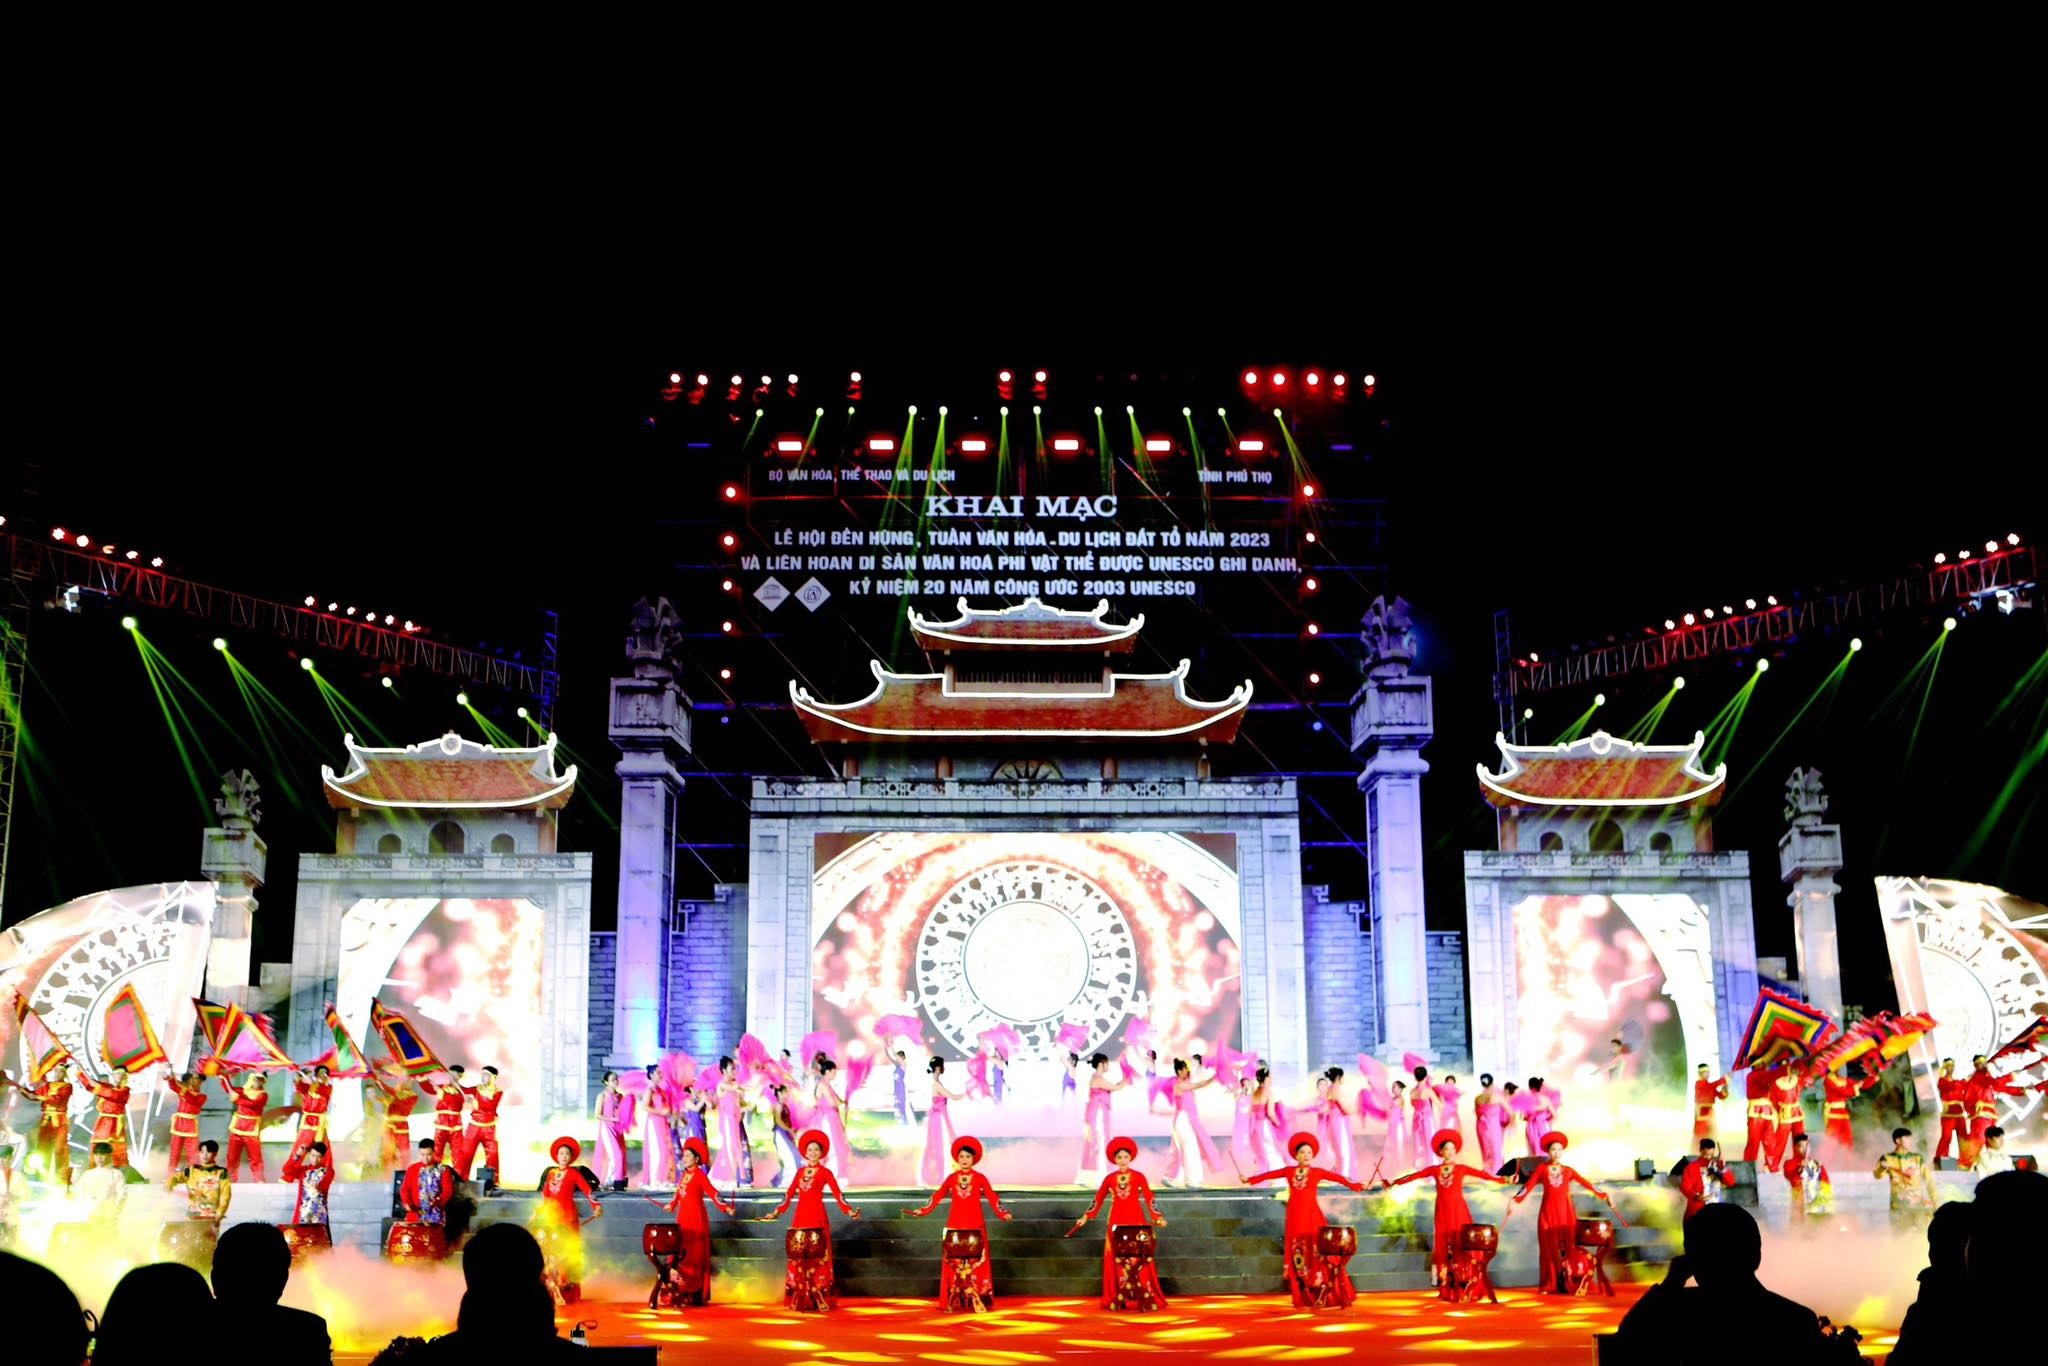 Lễ hội đền Hùng: Hội tụ tinh hoa di sản văn hóa - 1